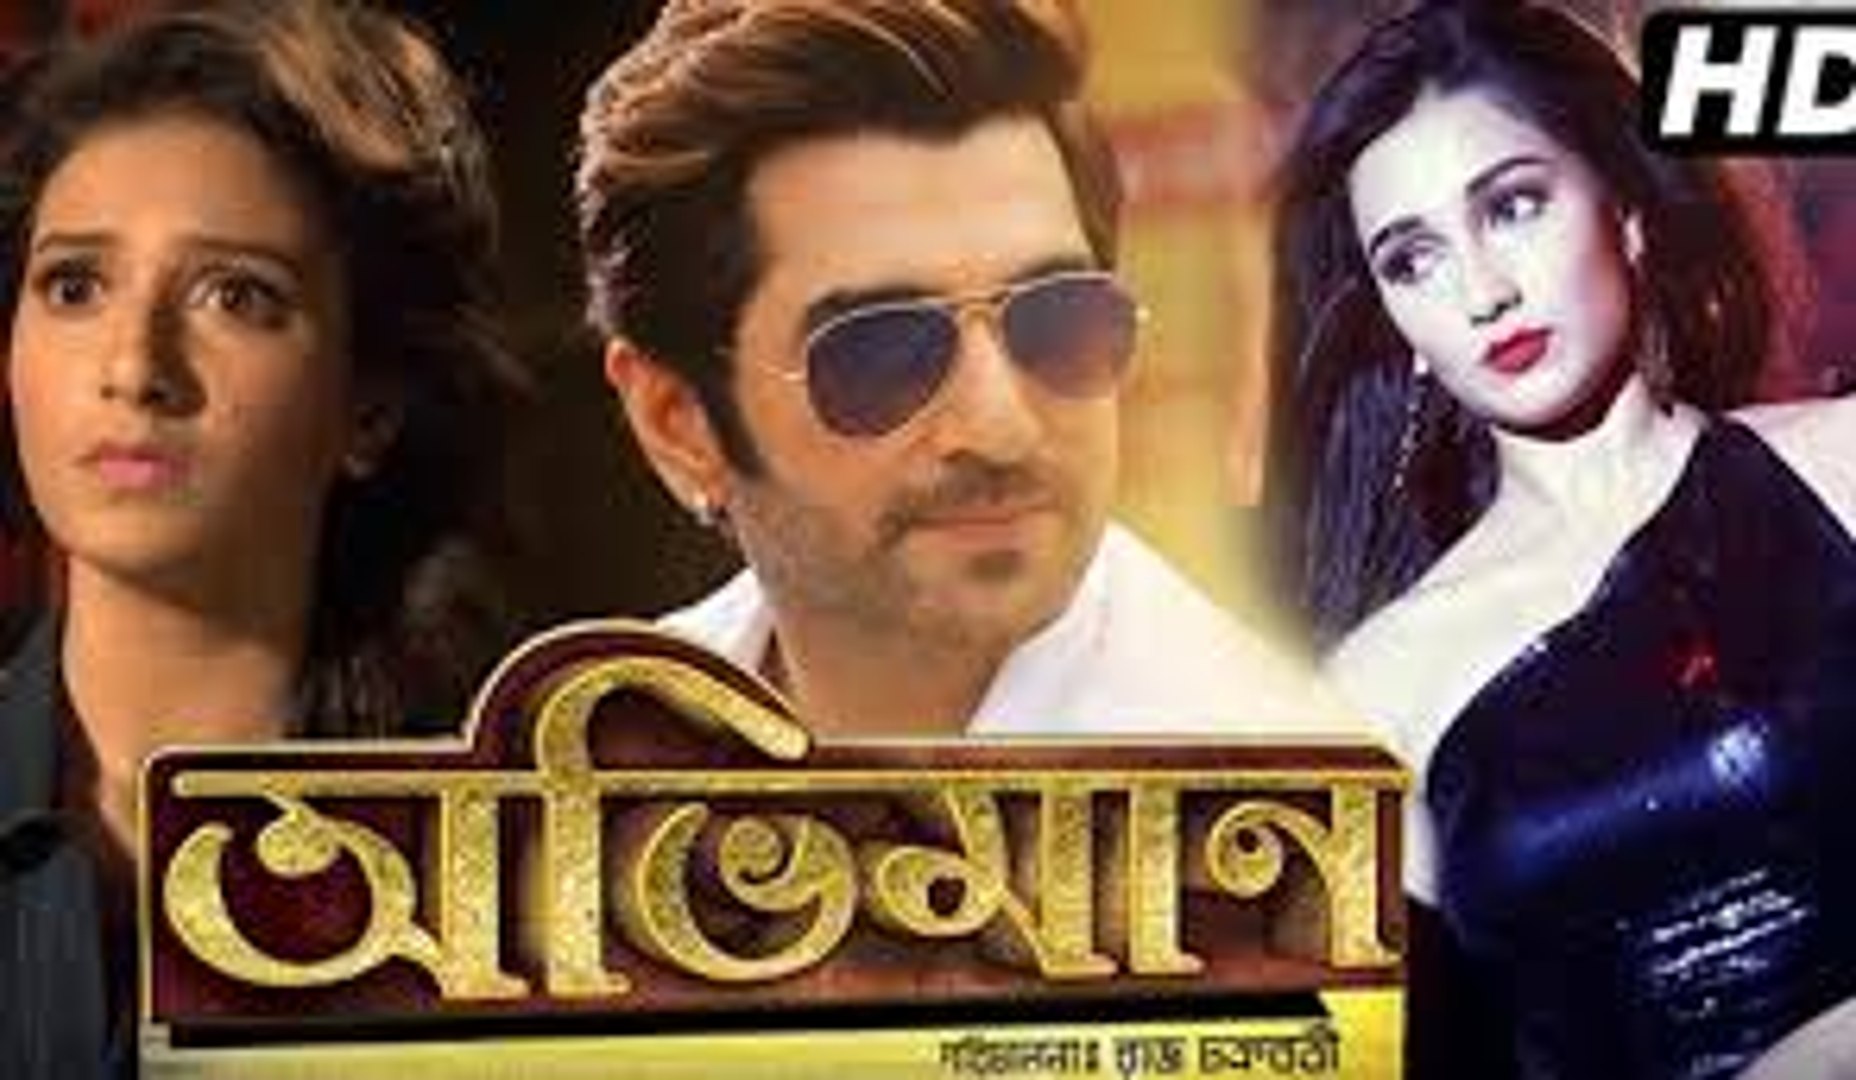 অভিমান Benagli Movie part 1 | অভিমান movie | Abhimaan bengali movie part 1  Jeet's new movie - video Dailymotion